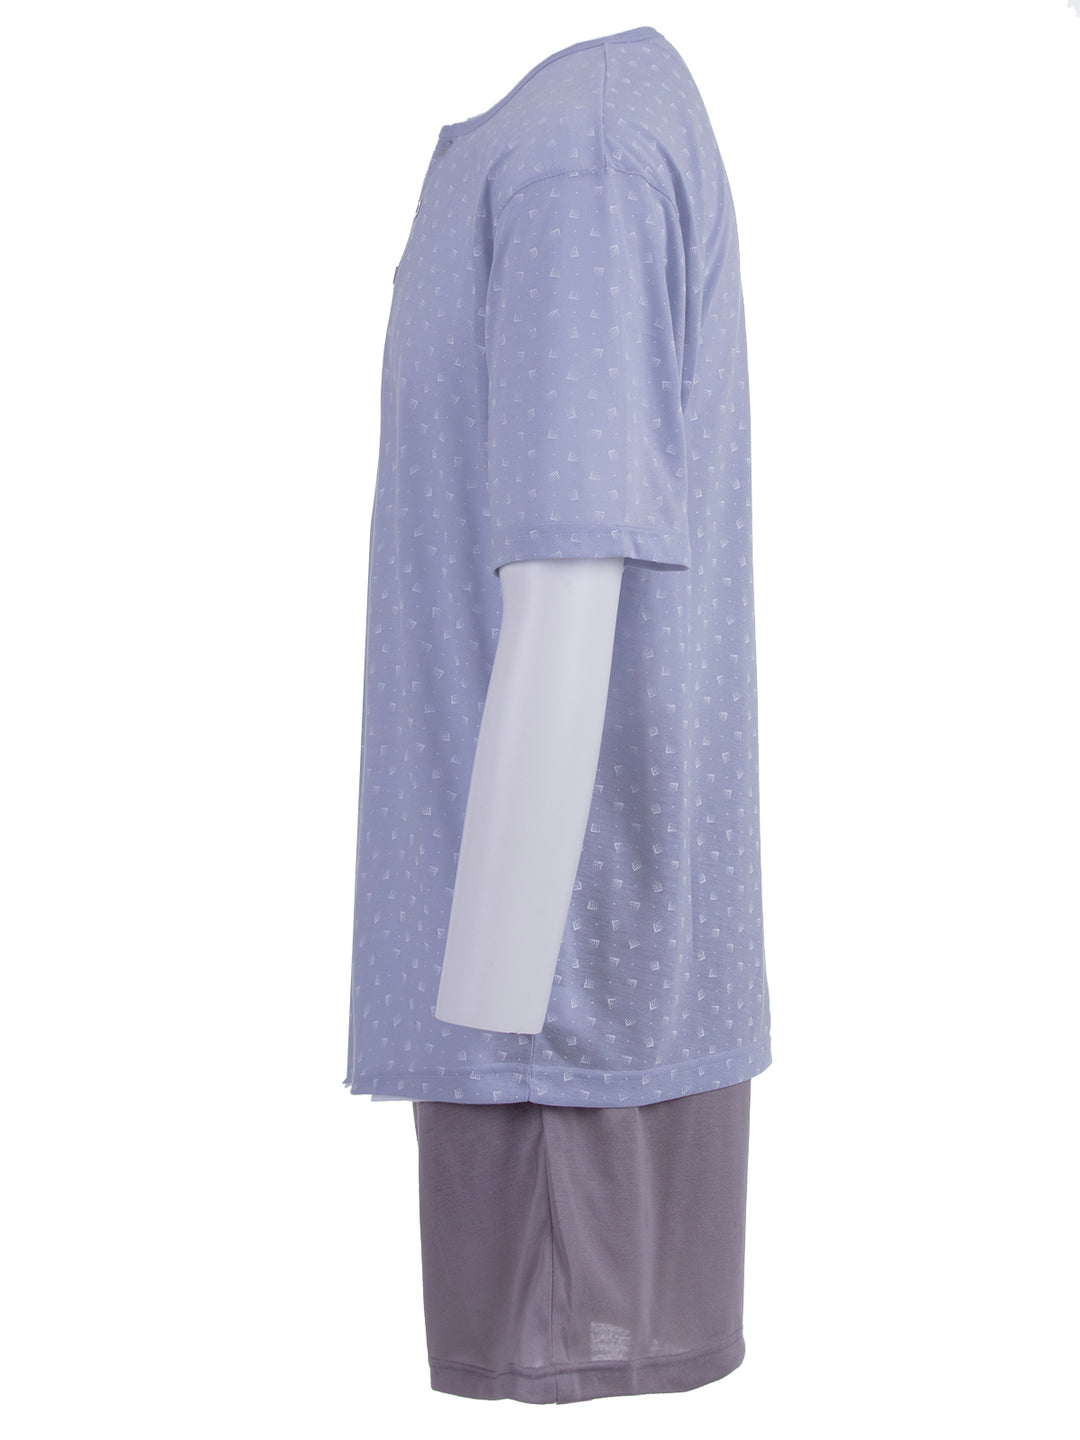 Pyjama Set Shorty - Knöpfe Rechteck